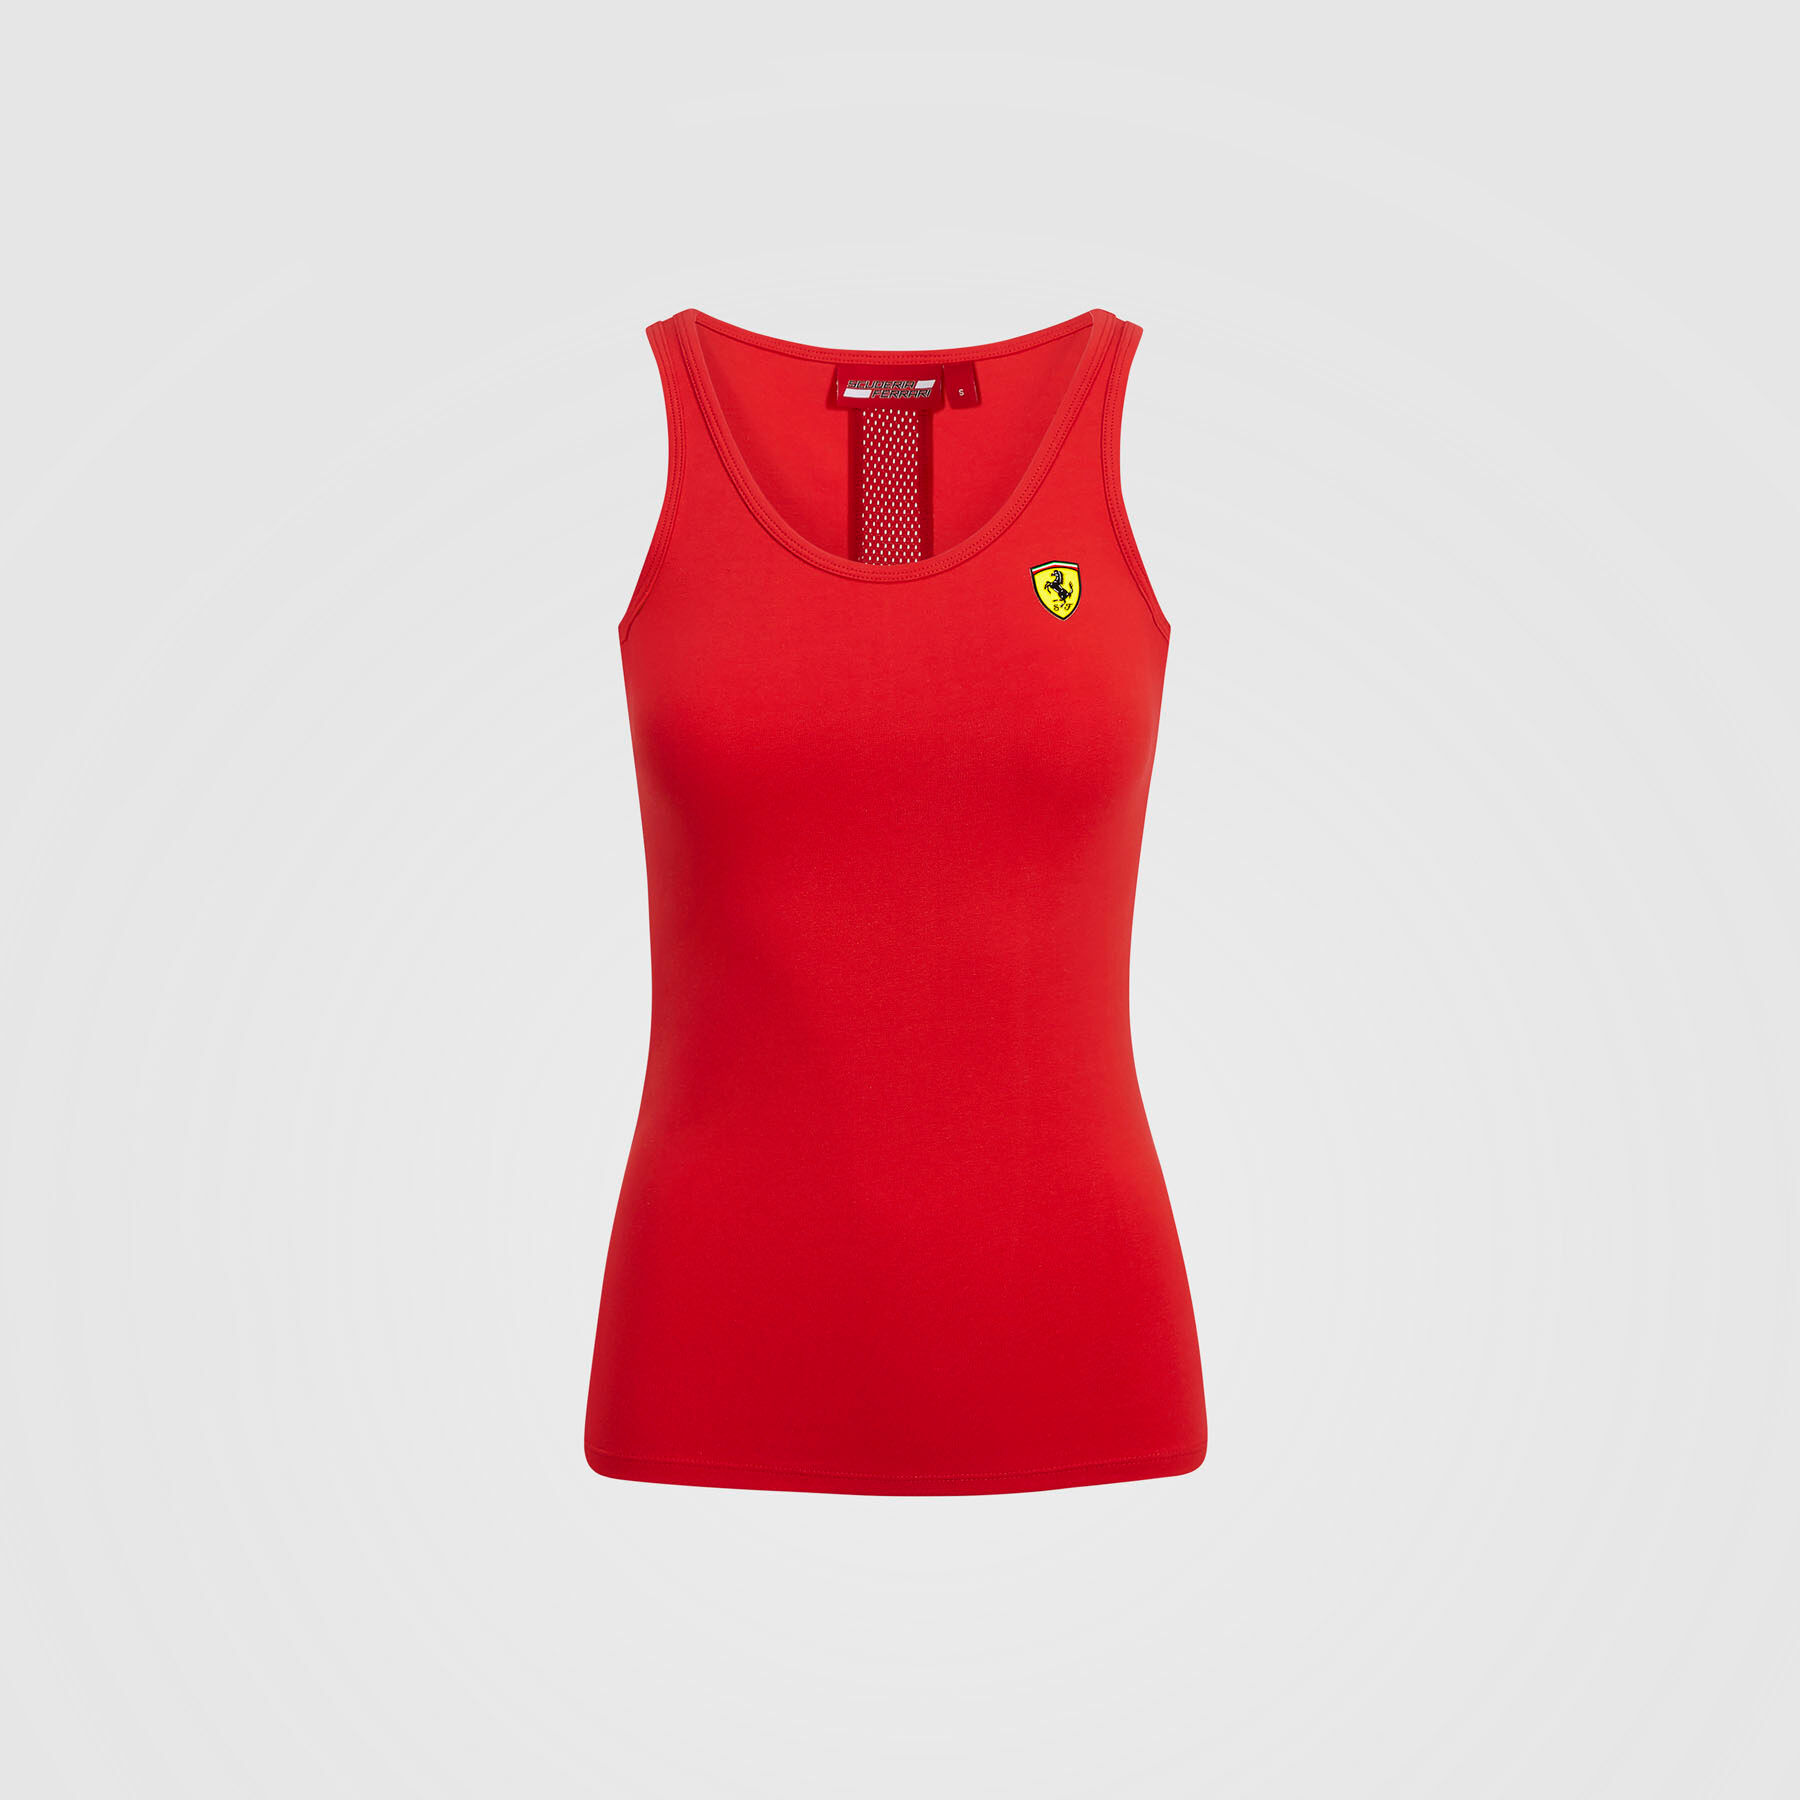 Scuderia Ferrari F1 Fanwear Womens Ladies Vest Tank Top Tee Sizes XS-XL New 